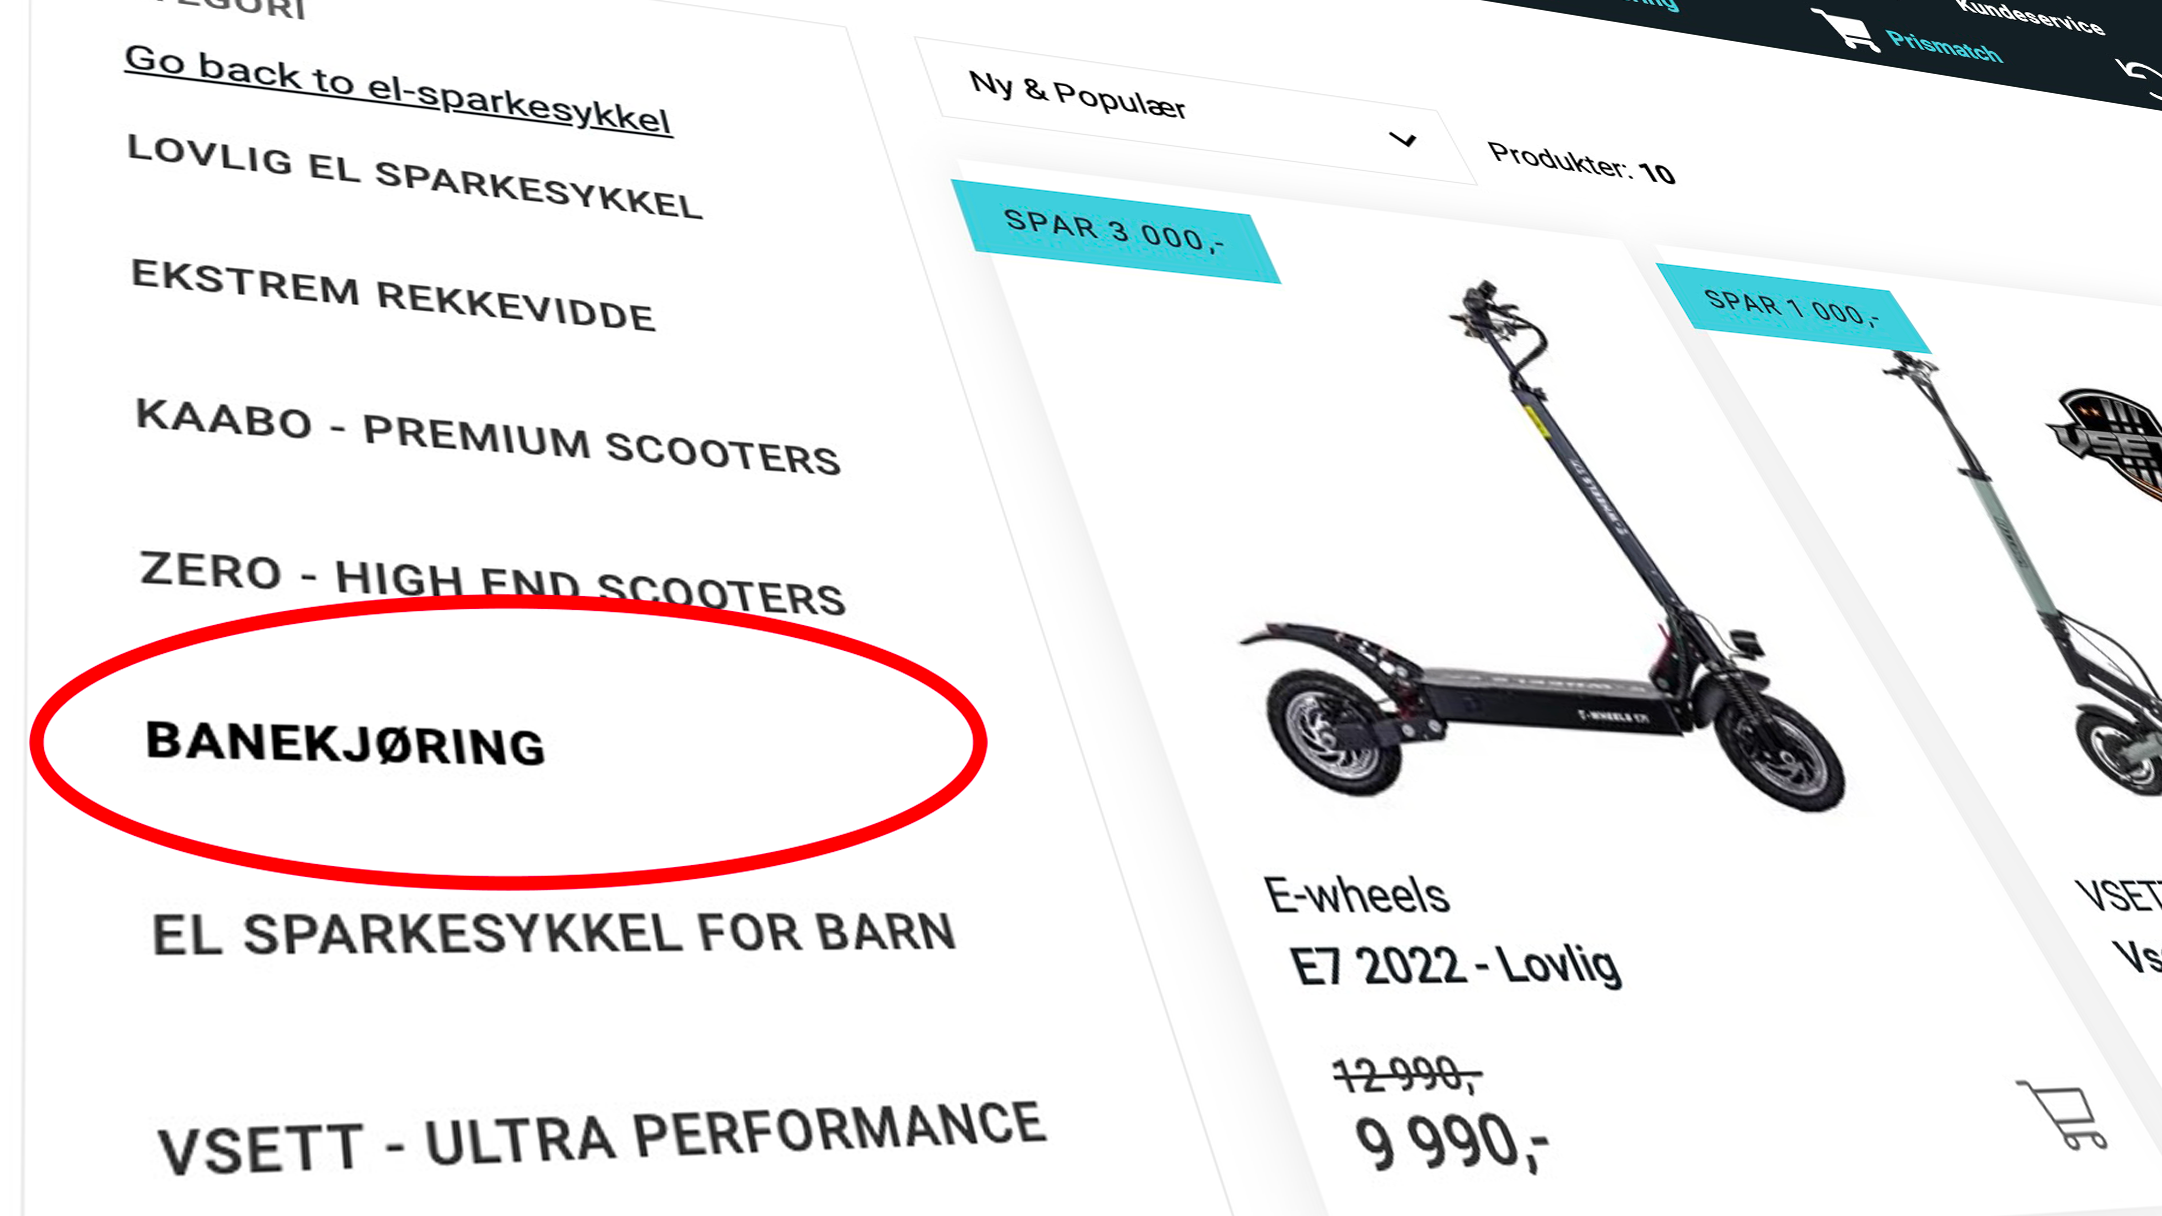 Skjermbilde fra E-wheels’ salgskategori for elsparkesykler kalt «banekjøring».